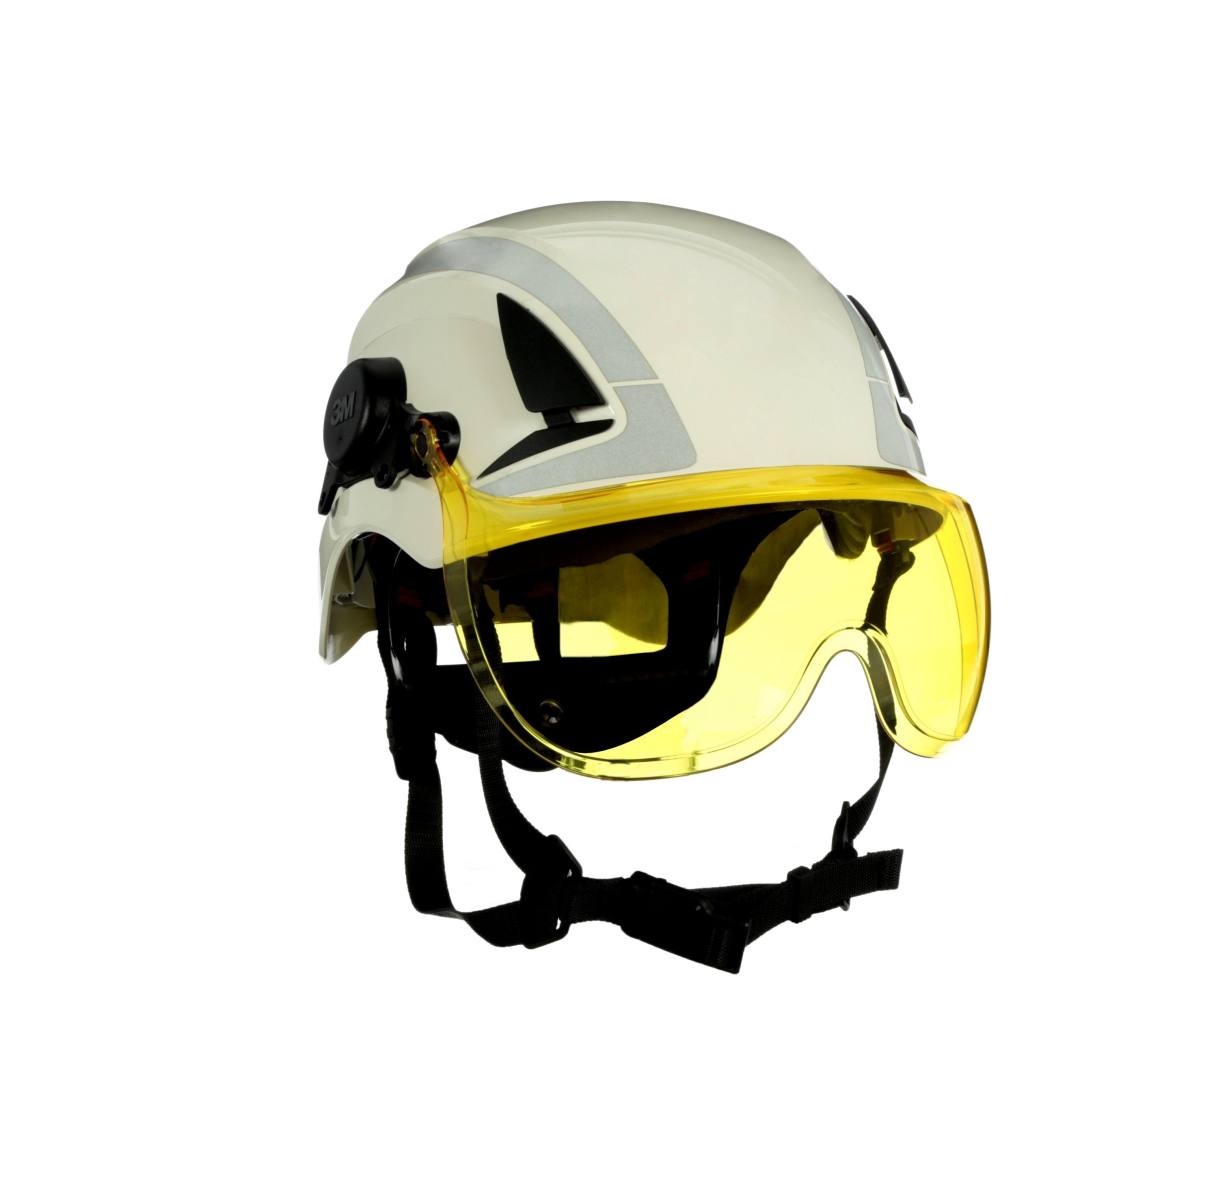 Visière courte 3M X5-SV03-CE pour les casques de protection X5000 et X5500, jaune, traitement antibuée et anti-rayures, polycarbonate